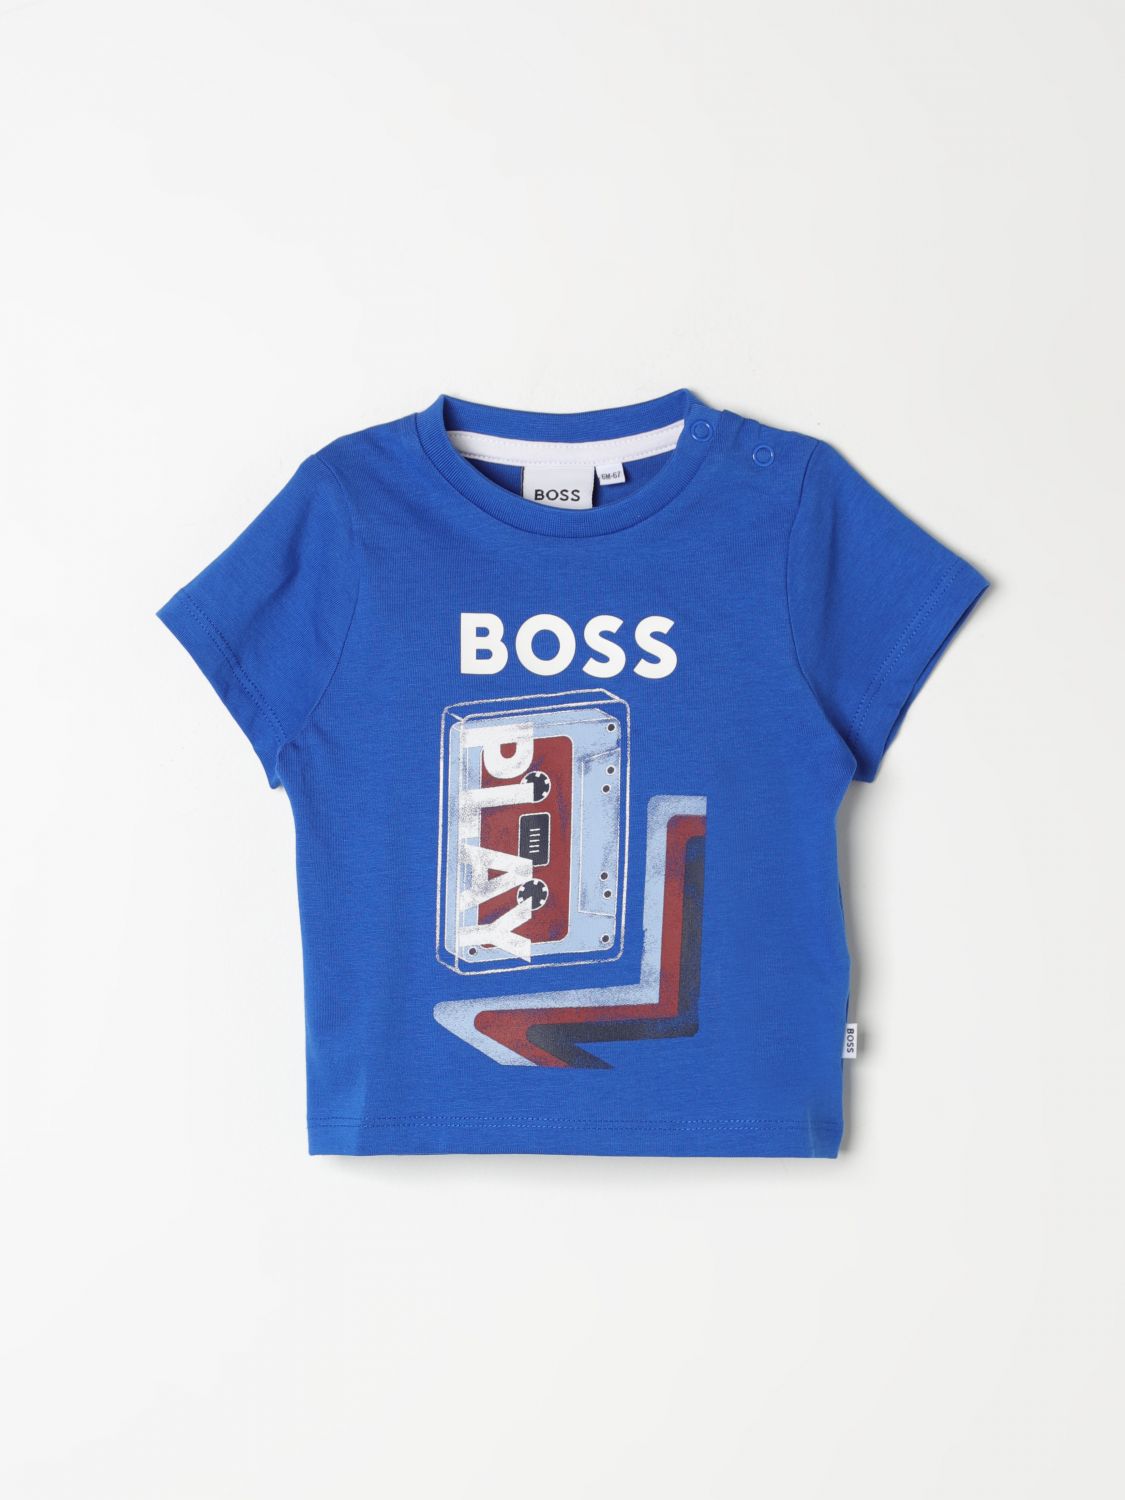 Bosswear T-shirt Boss Kidswear Kids Color Royal Blue